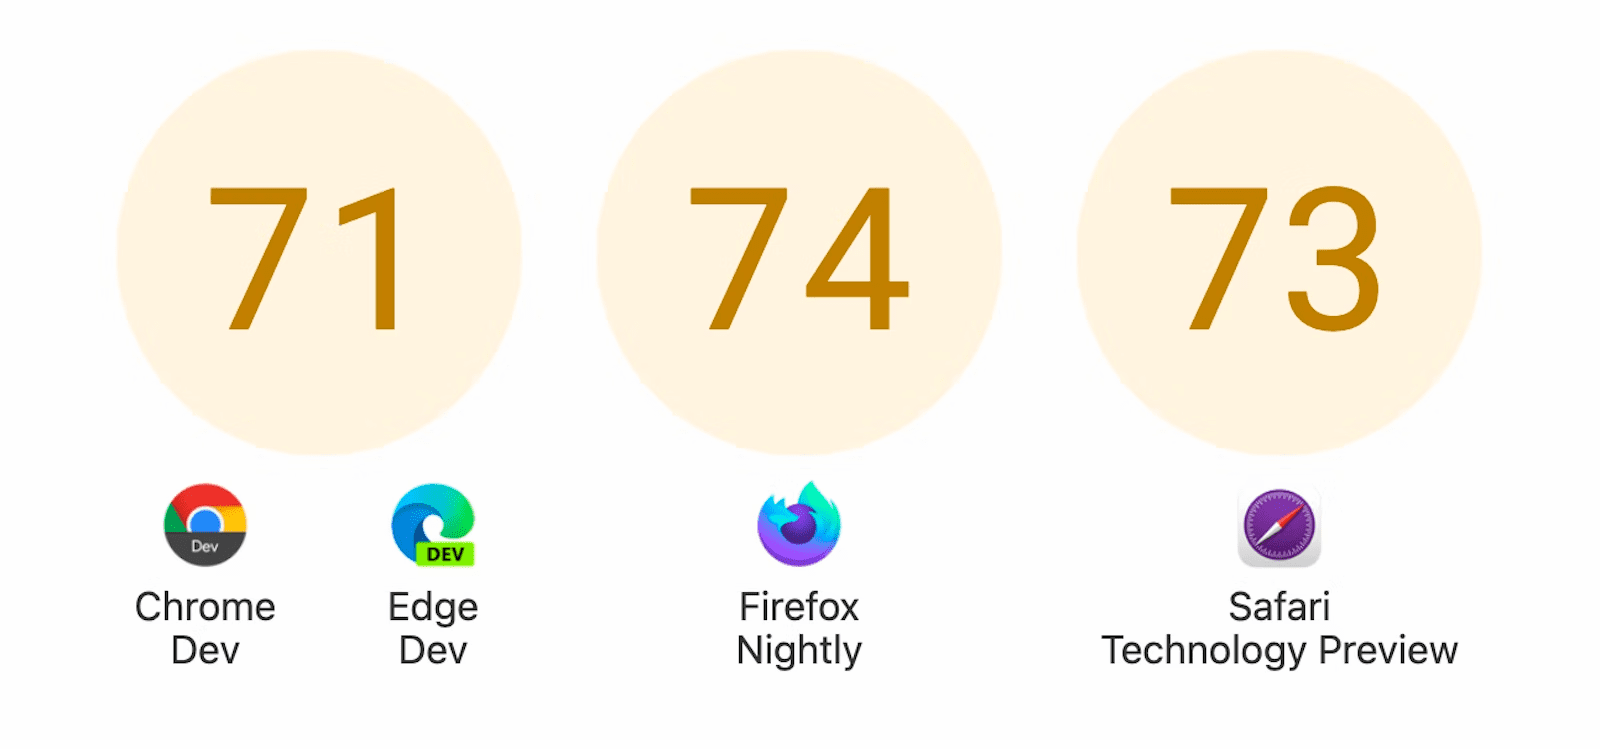 Se muestran tres círculos con puntuaciones: 71 para Chrome Dev y Edge Dev, 74 para Firefox Nightly y 73 para la vista previa de la tecnología Safari.